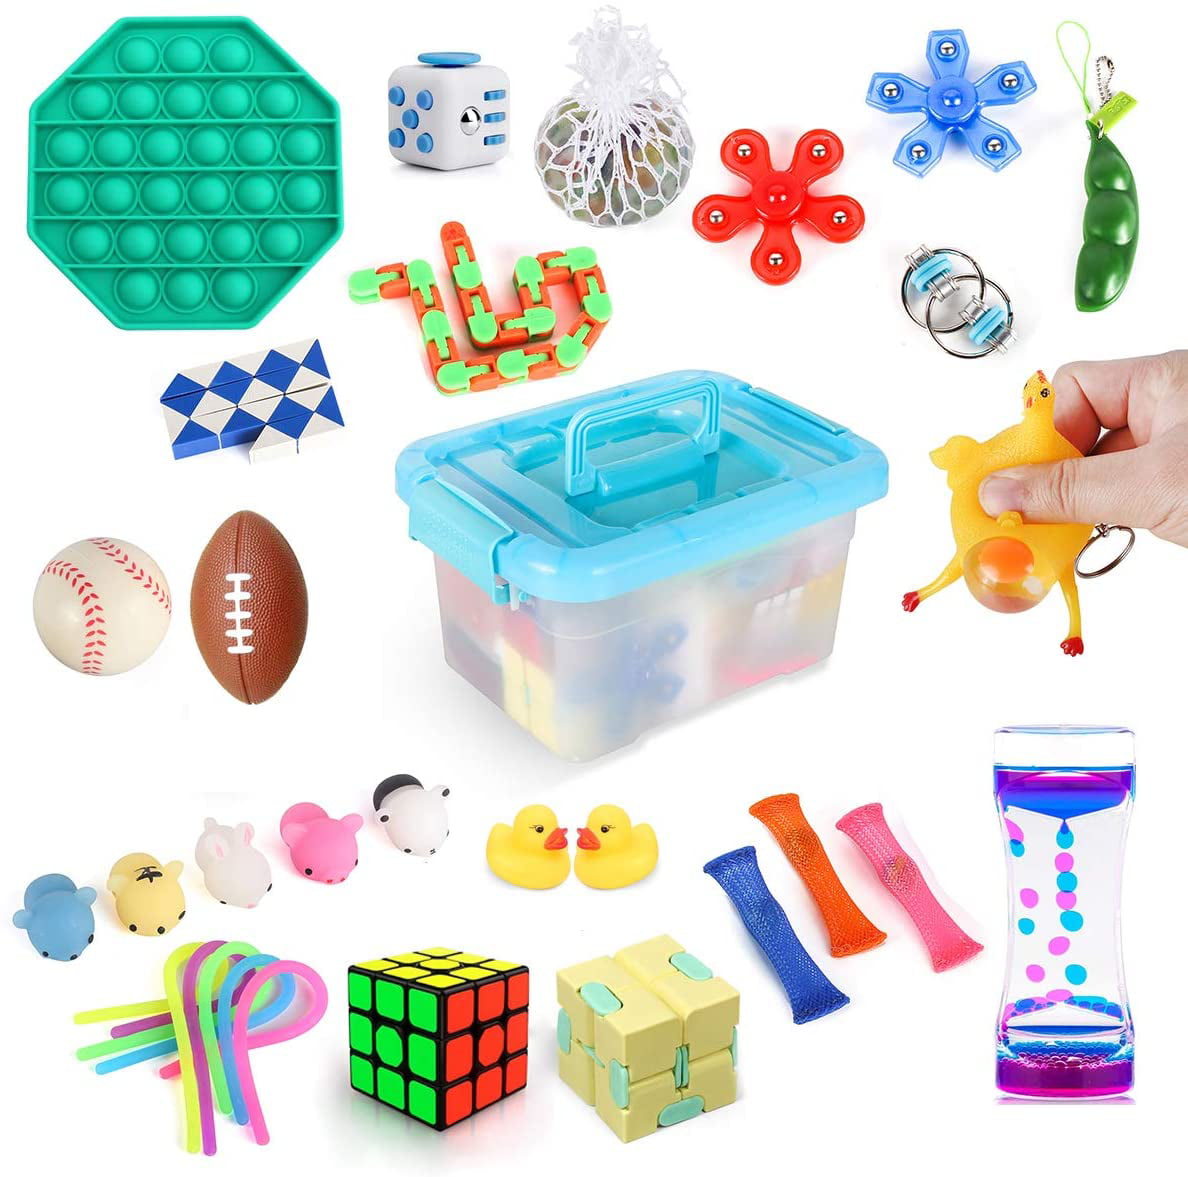 Mini Simple &Dimple Infinite Cube Squeeze Bean Toys Bundle for Kids Adults HANGYUAN 20Pcs Fidget Toys Packs Snappers Cheap Sensory Fidget Toys Kit with Pop Bubble 